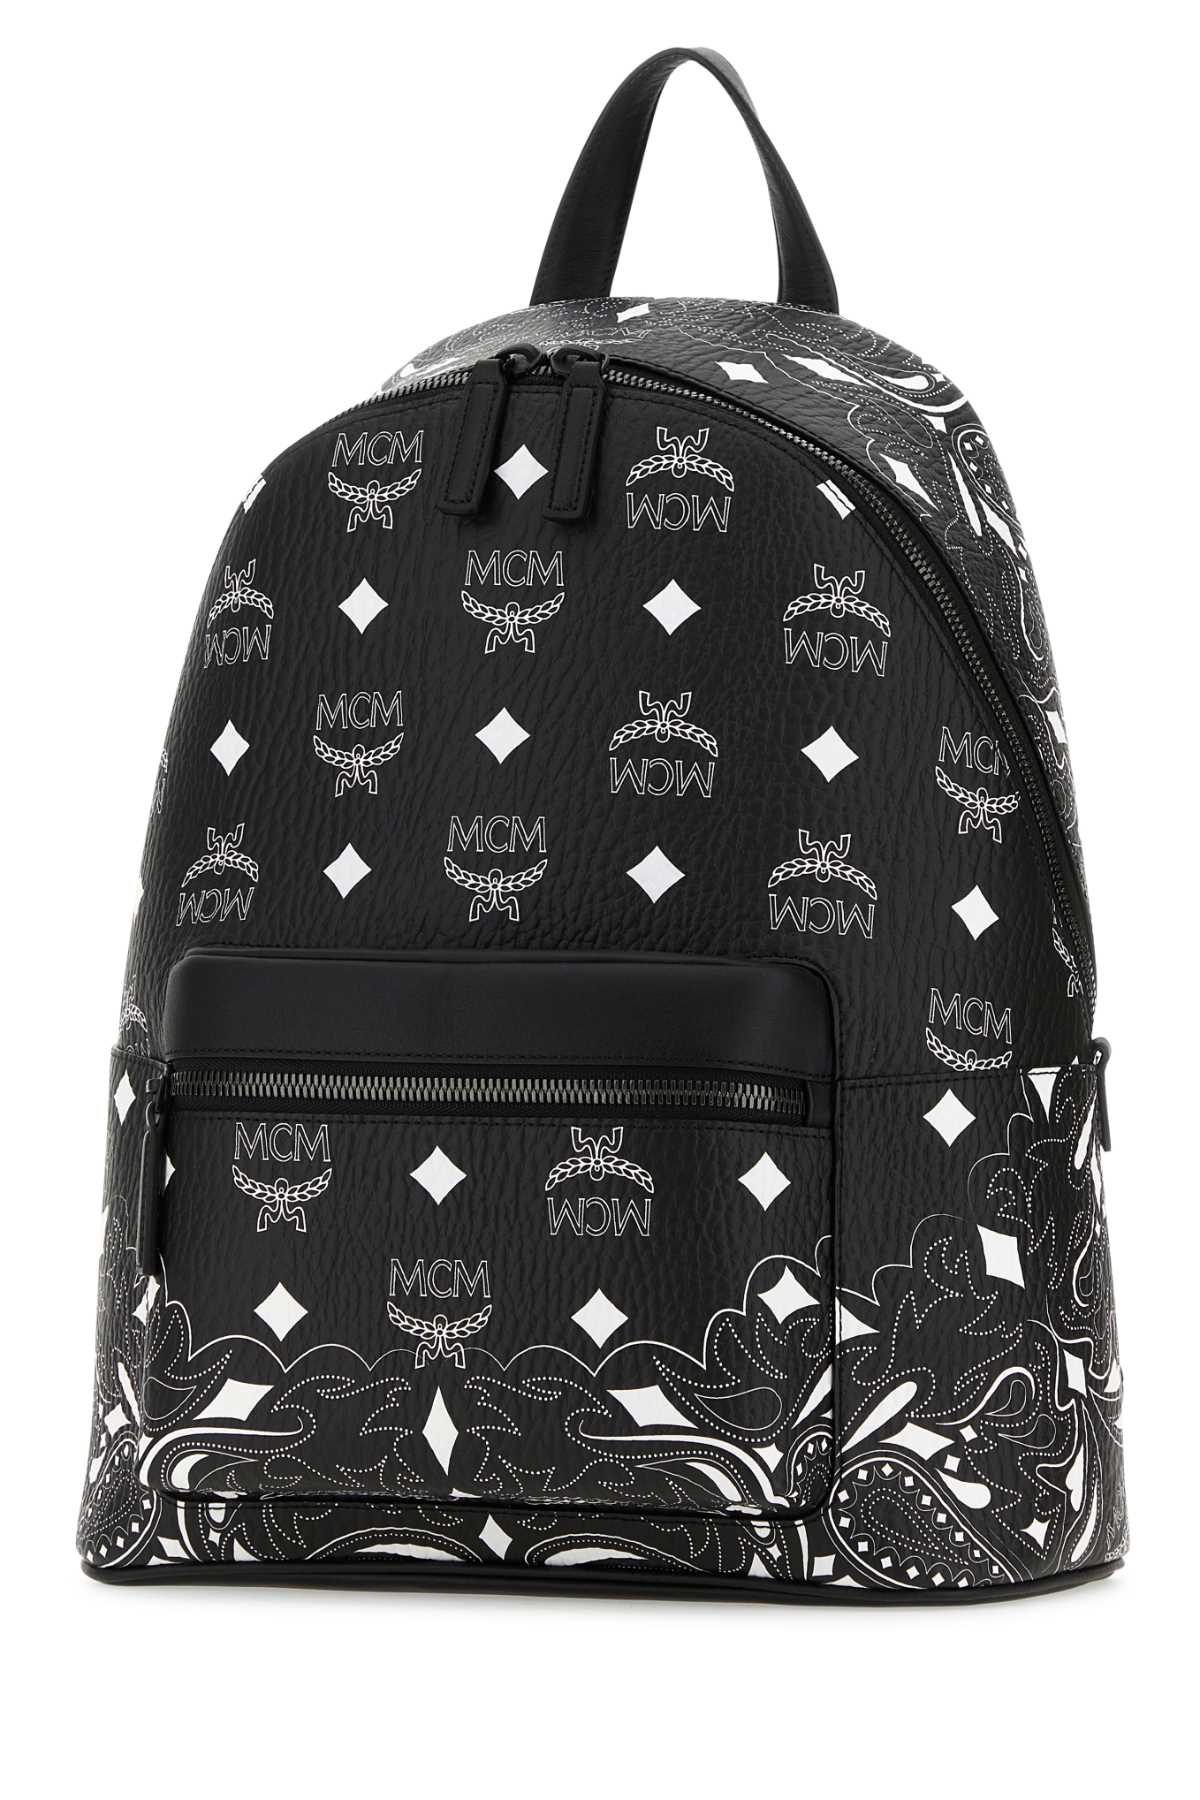 Mcm Printed Canvas Medium Stark Backpack In Black